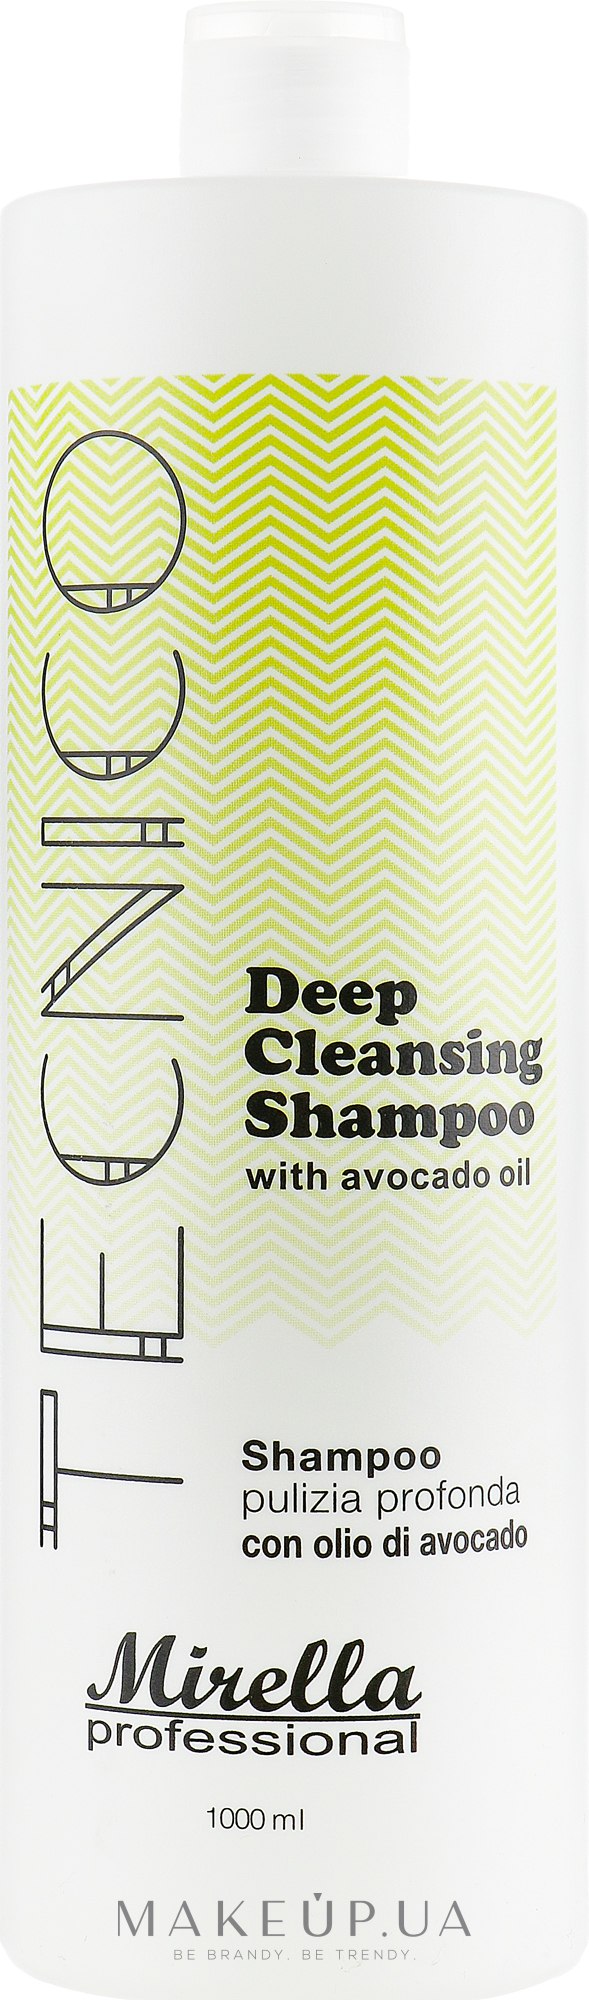 Шампунь з олією авокадо для глибокого очищення волосся  - Mirella Professional Tecnico Deep Cleansing Shampoo — фото 1000ml